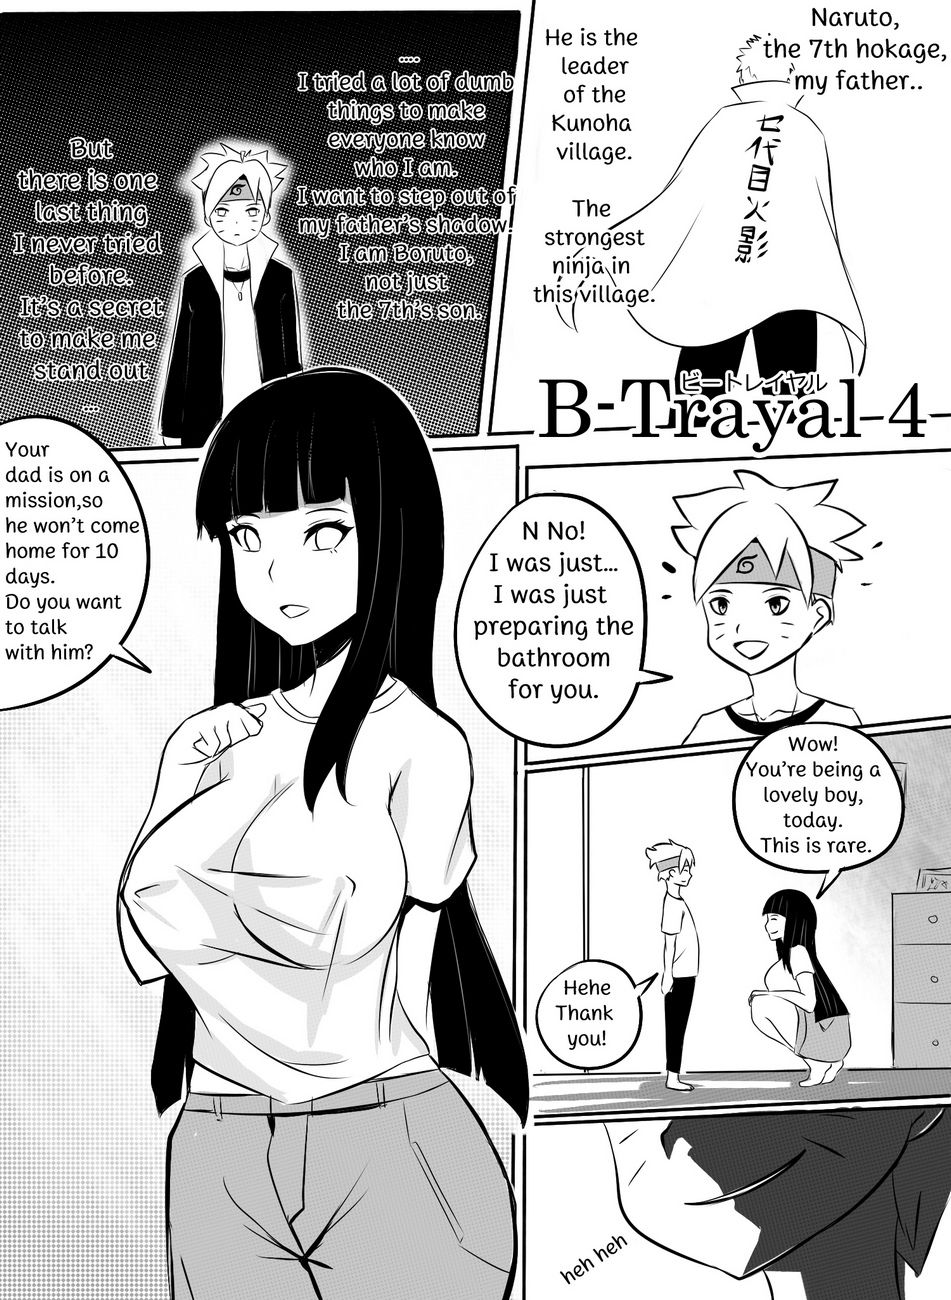 Naruto porn comic betrayal